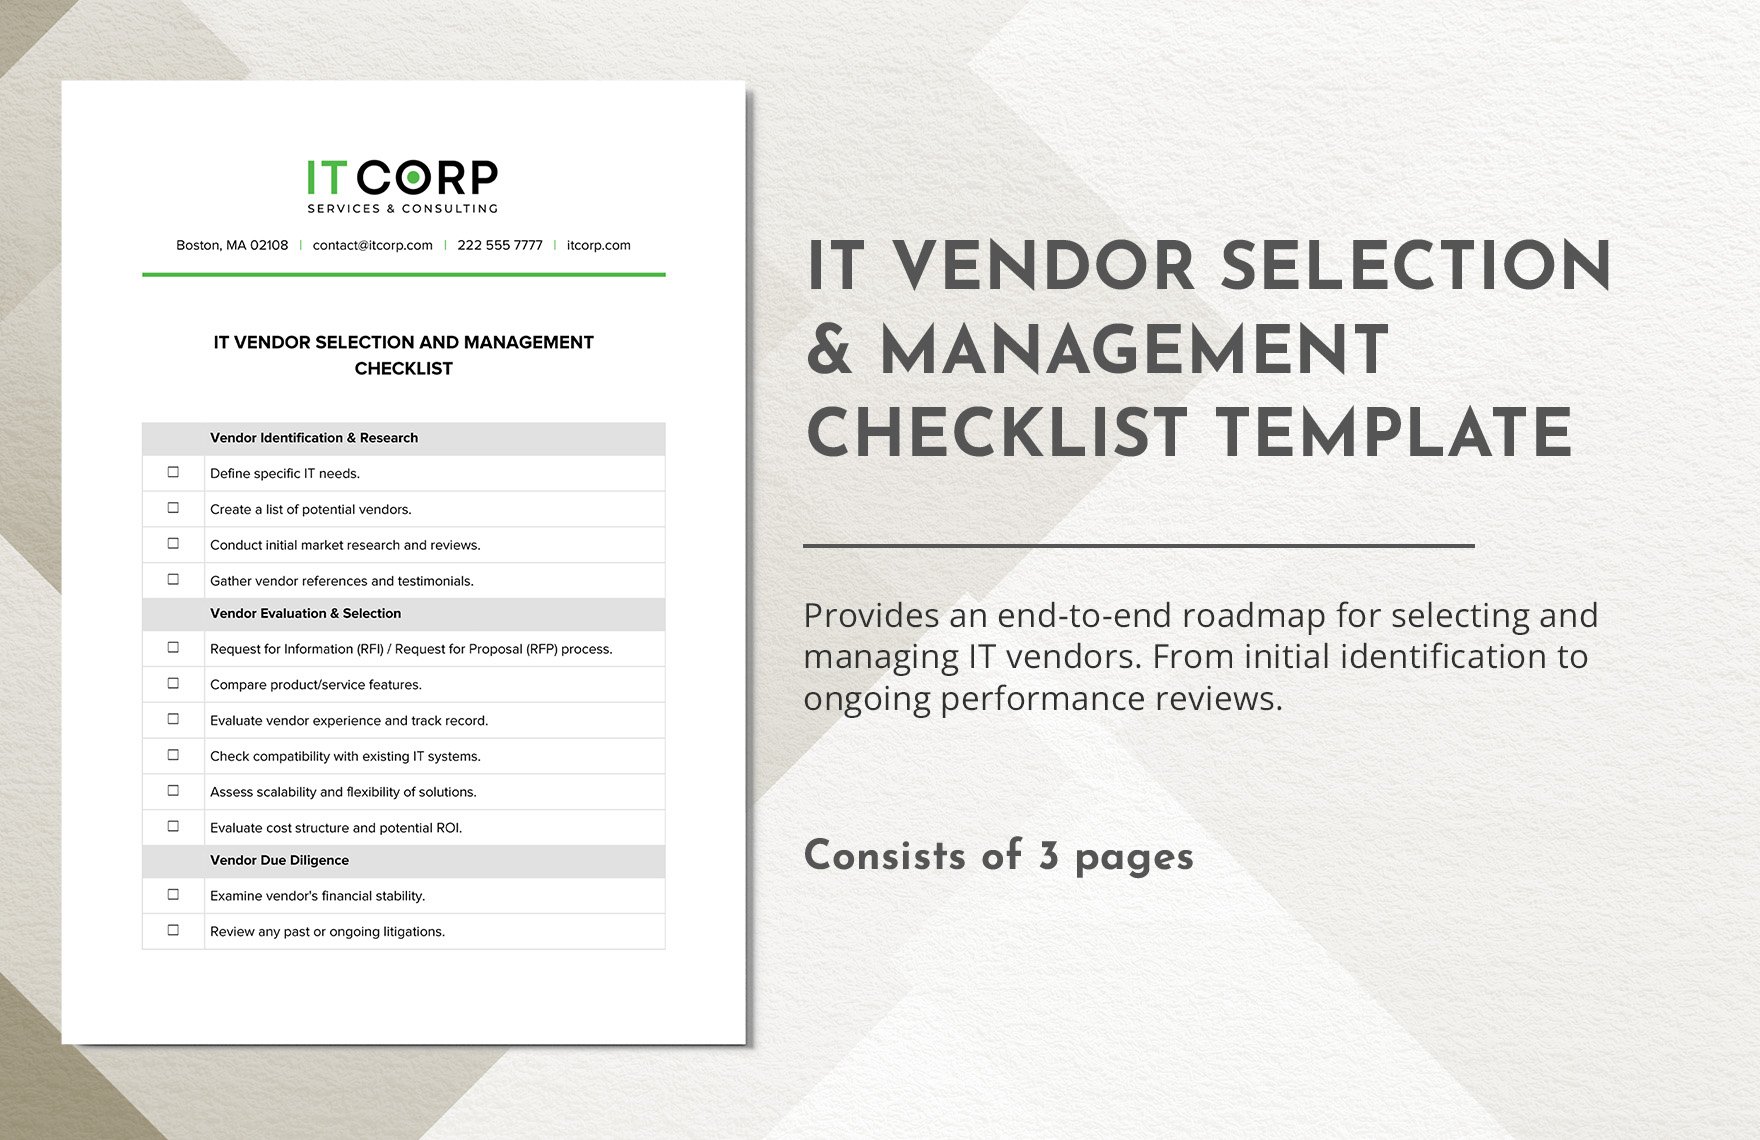 IT Vendor Selection & Management Checklist Template